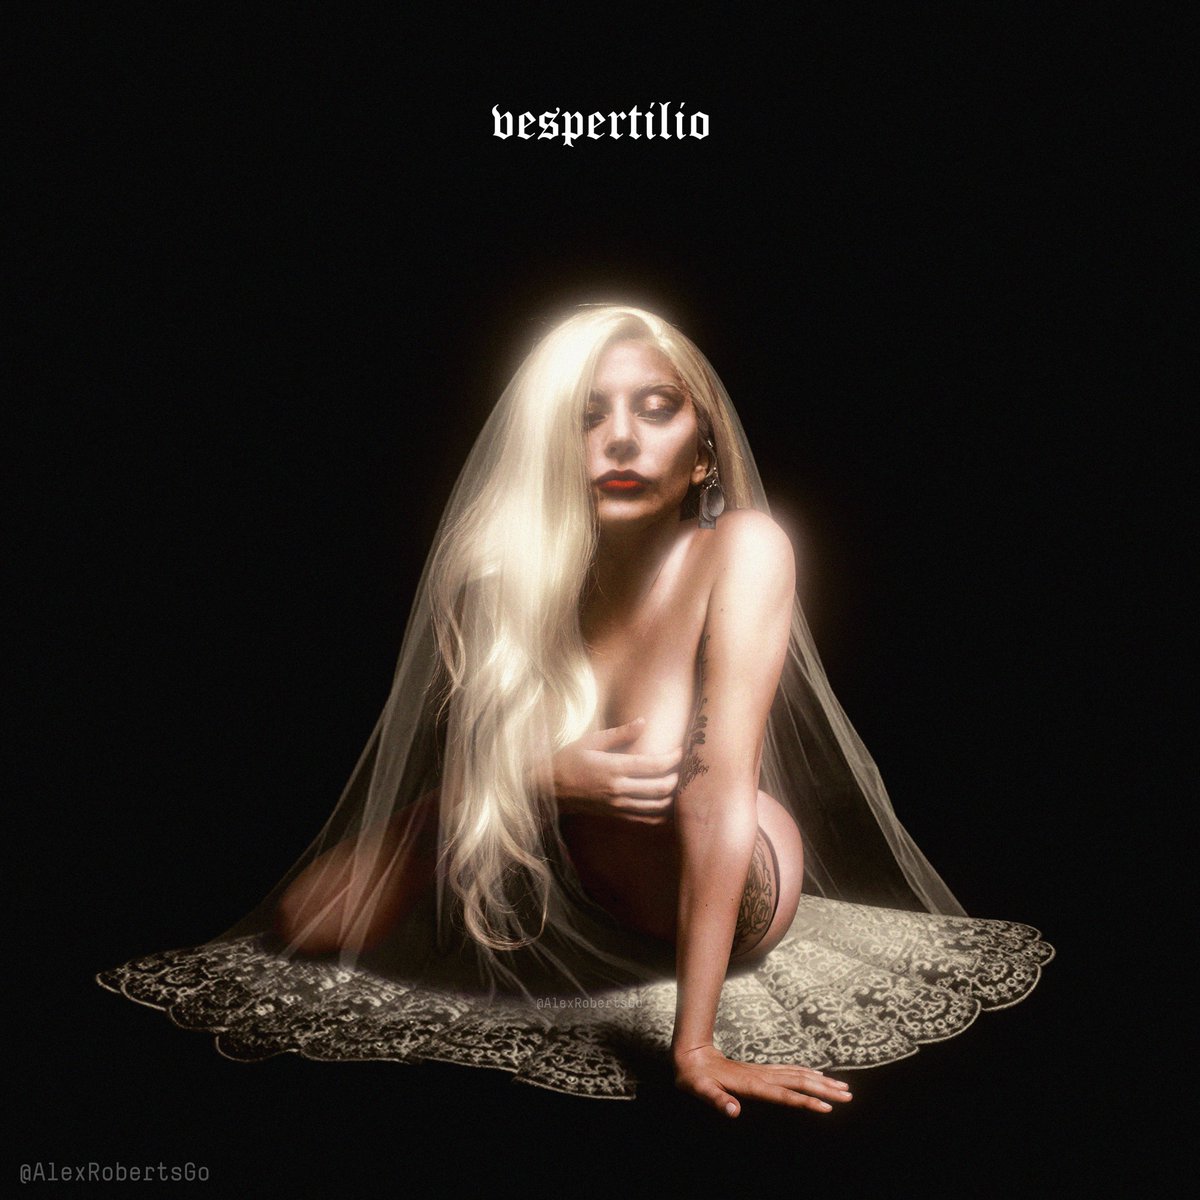 𝔱𝔥𝔢 𝔳𝔢𝔰𝔭𝔢𝔯𝔱𝔦𝔩𝔦𝔬 𝔦𝔰 𝔠𝔬𝔪𝔦𝔫𝔤... #Gaga #Vespertilio #LG7